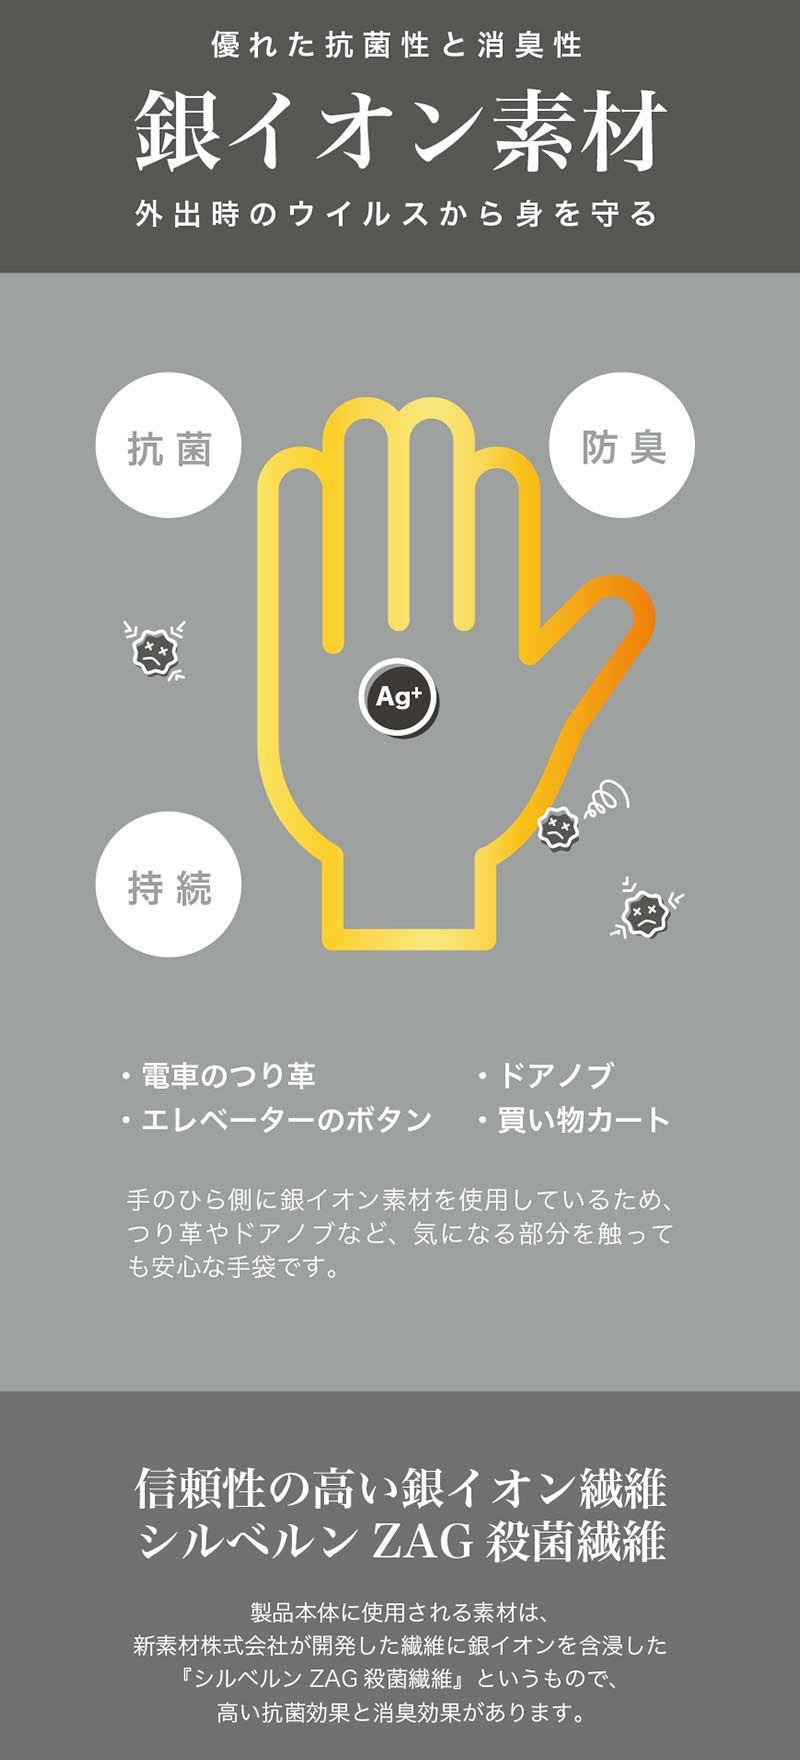 信頼性の高い銀イオン繊維「シルベルンZAG殺菌繊維」 銀イオン手袋 日本製 型番2-691